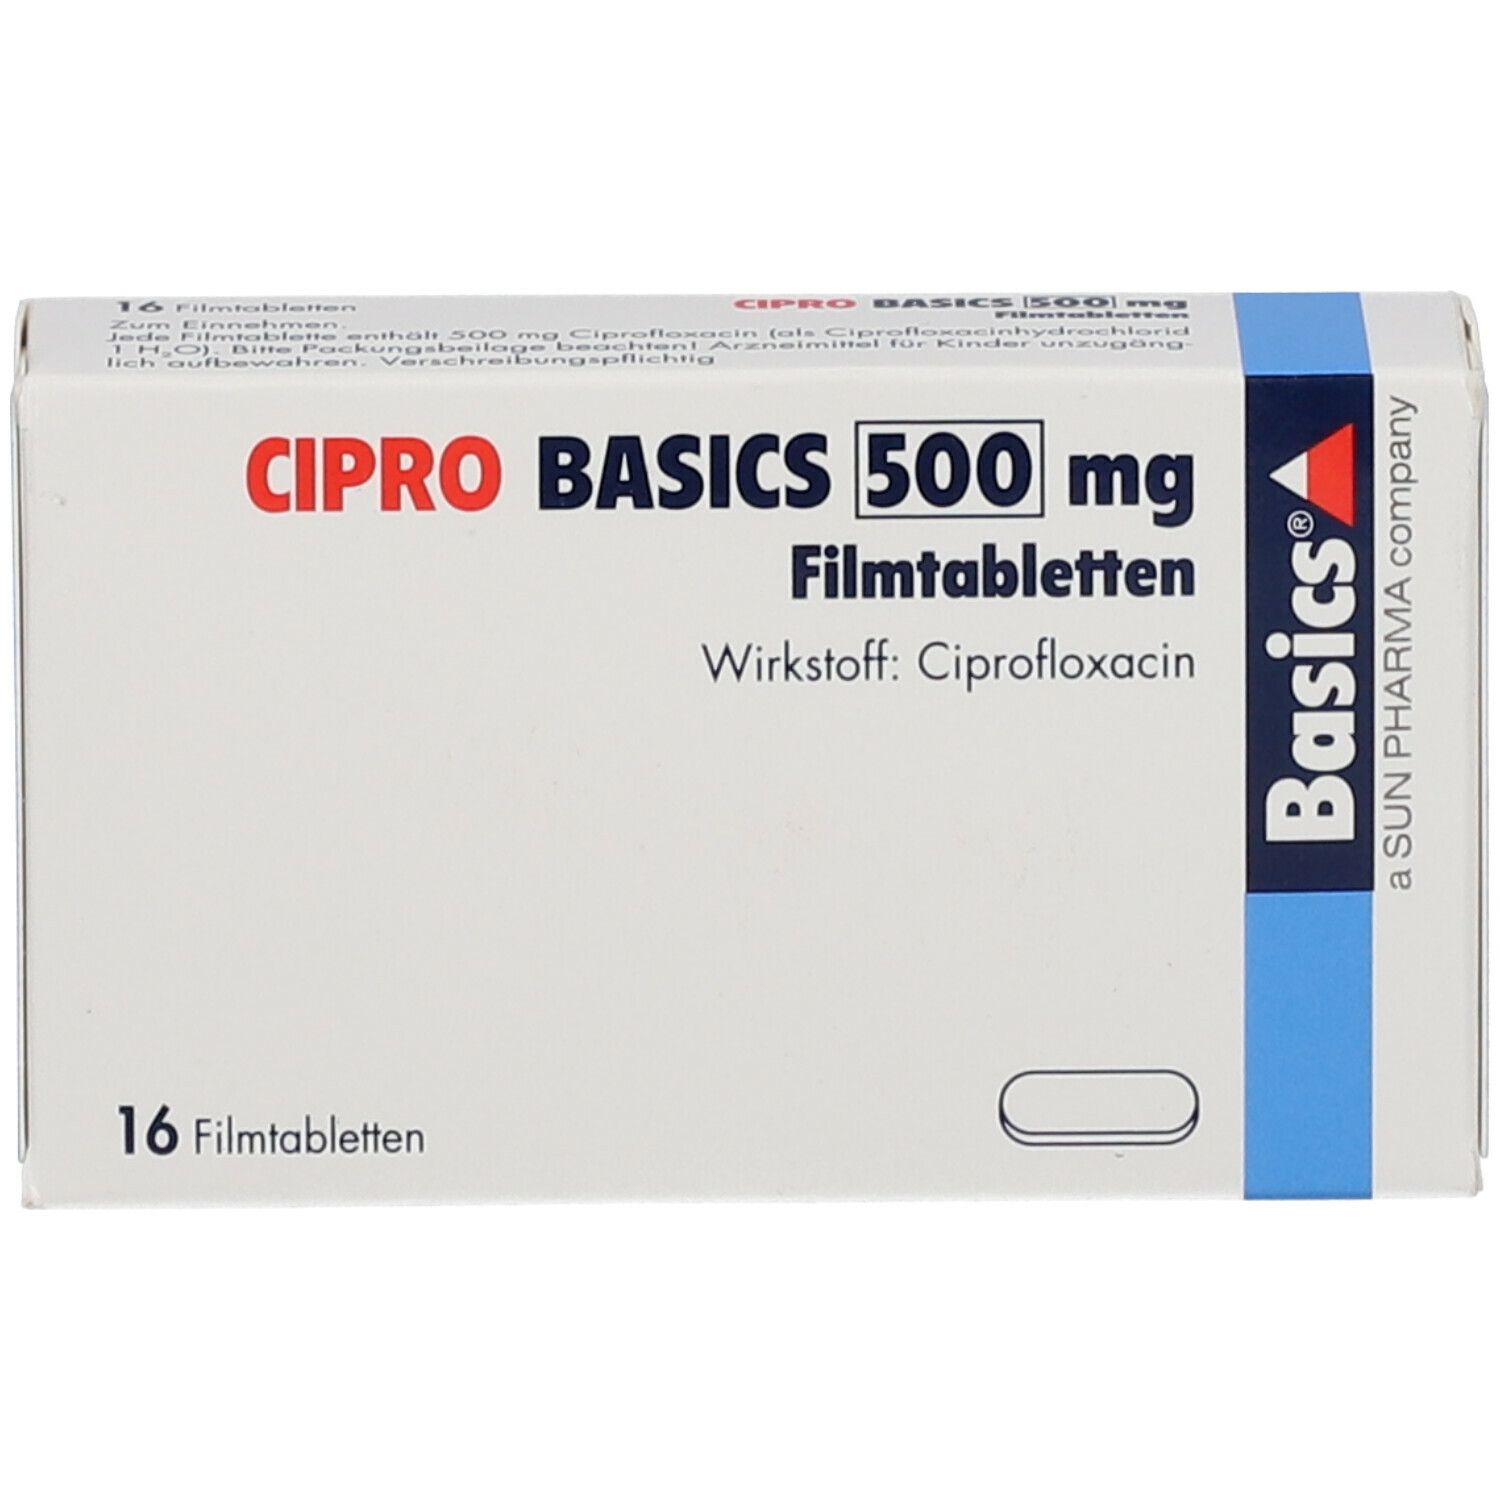 CIPRO BASICS 500 mg